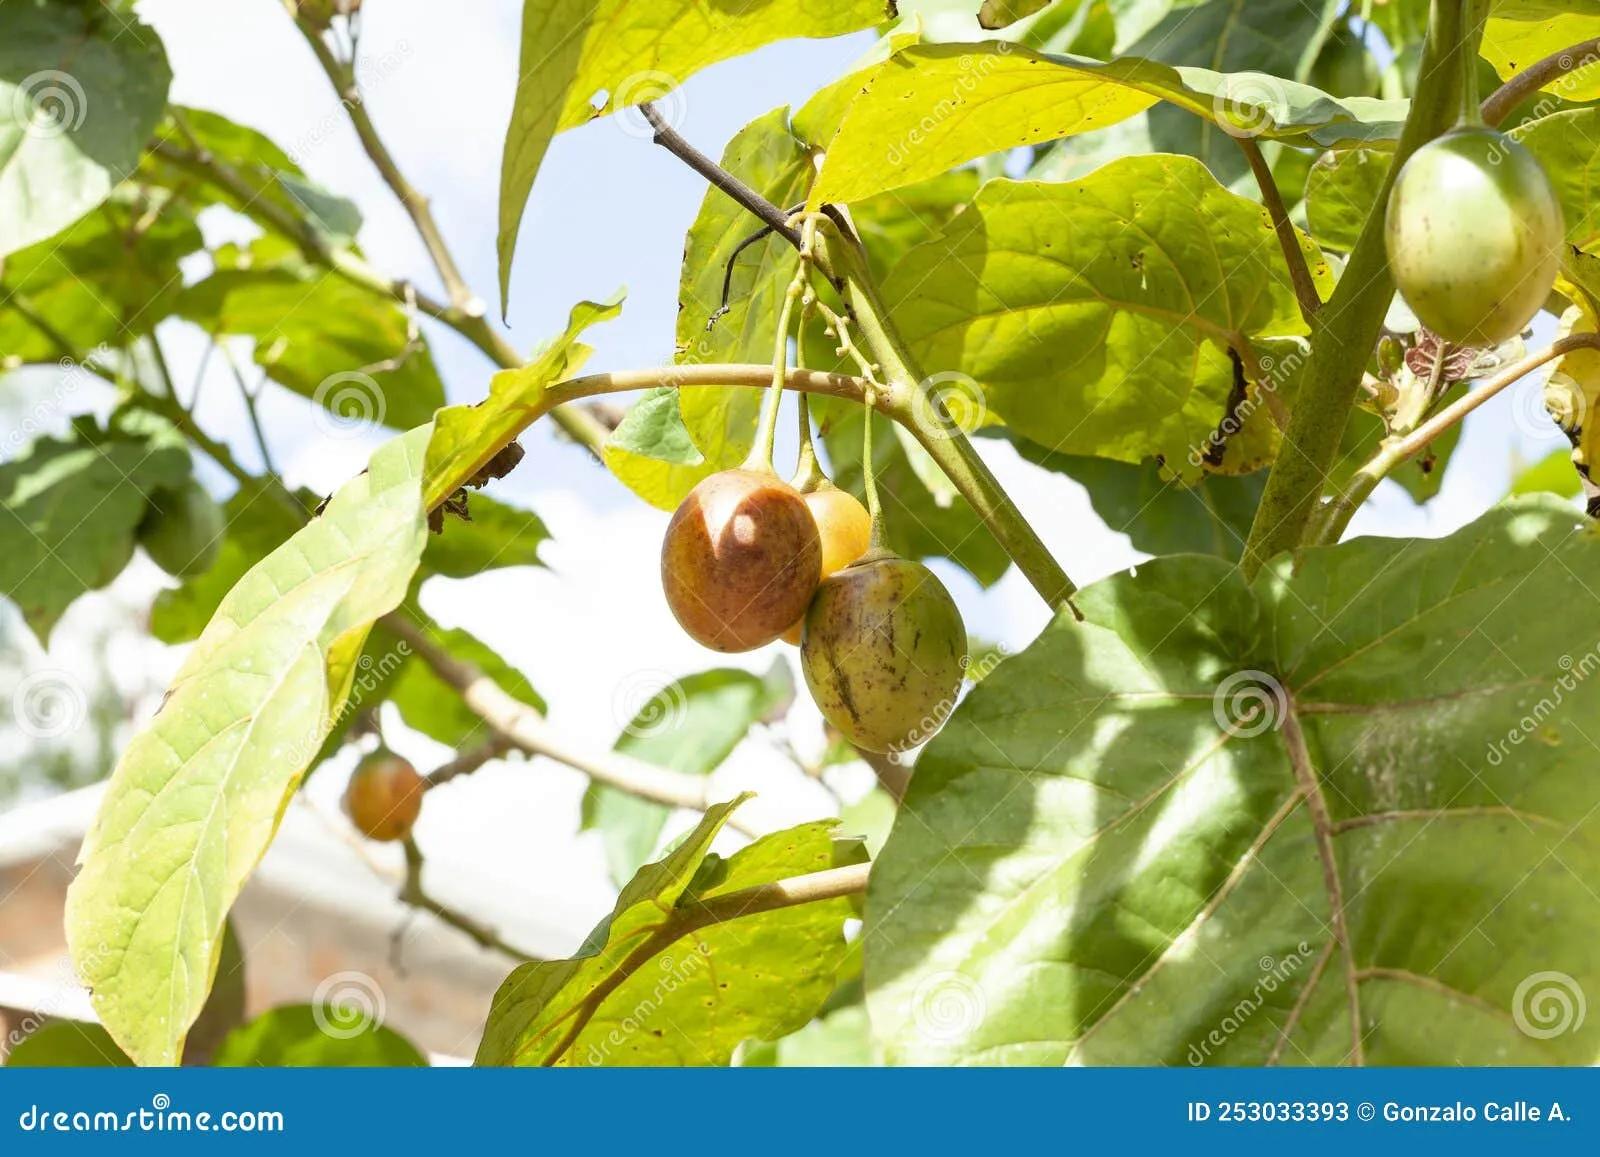 Tree Tomato Tamarillo Exotic Fruit - Solanum Betaceum Stock Image ...